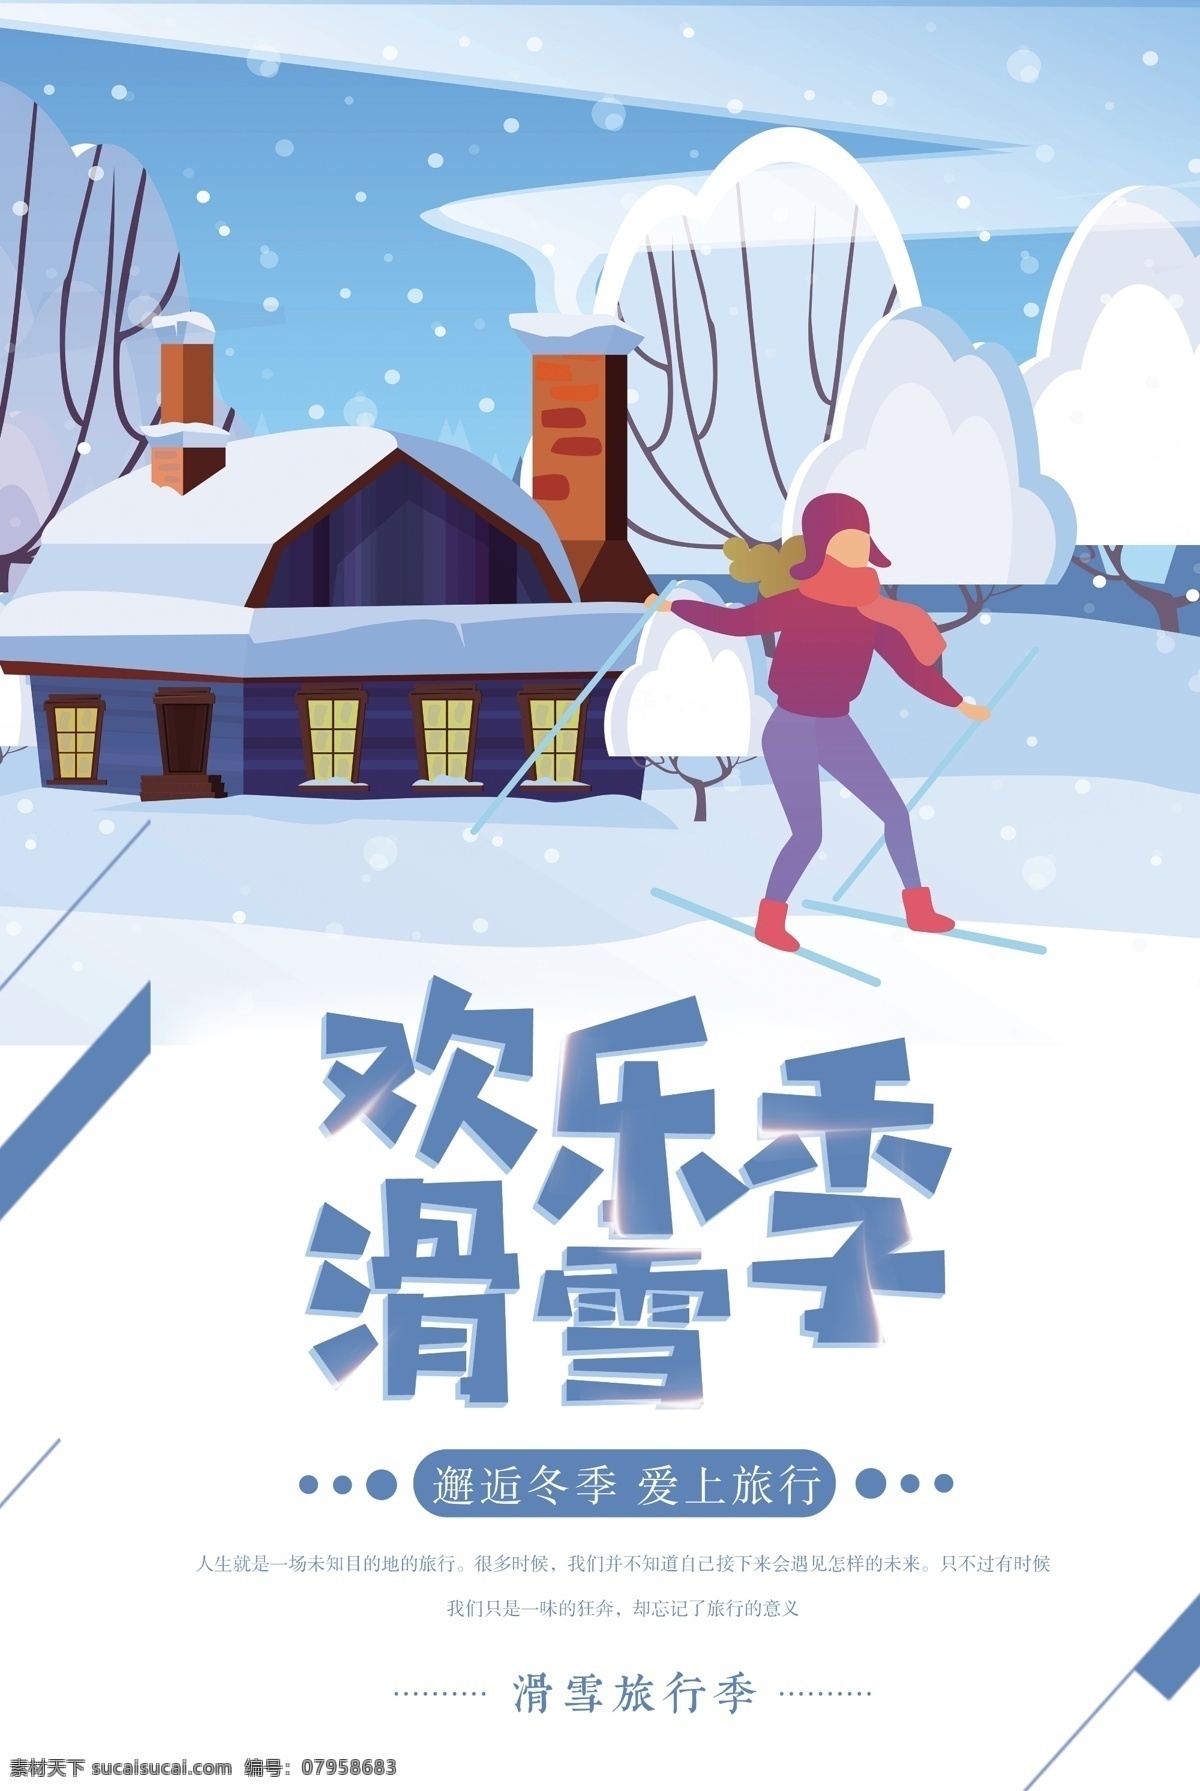 欢乐 滑雪 季 宣传海报 冬季 旅游 滑雪海报 滑雪场 滑雪宣传 海报 滑雪运动 越野 欢乐滑雪季 雪乡滑雪 出游